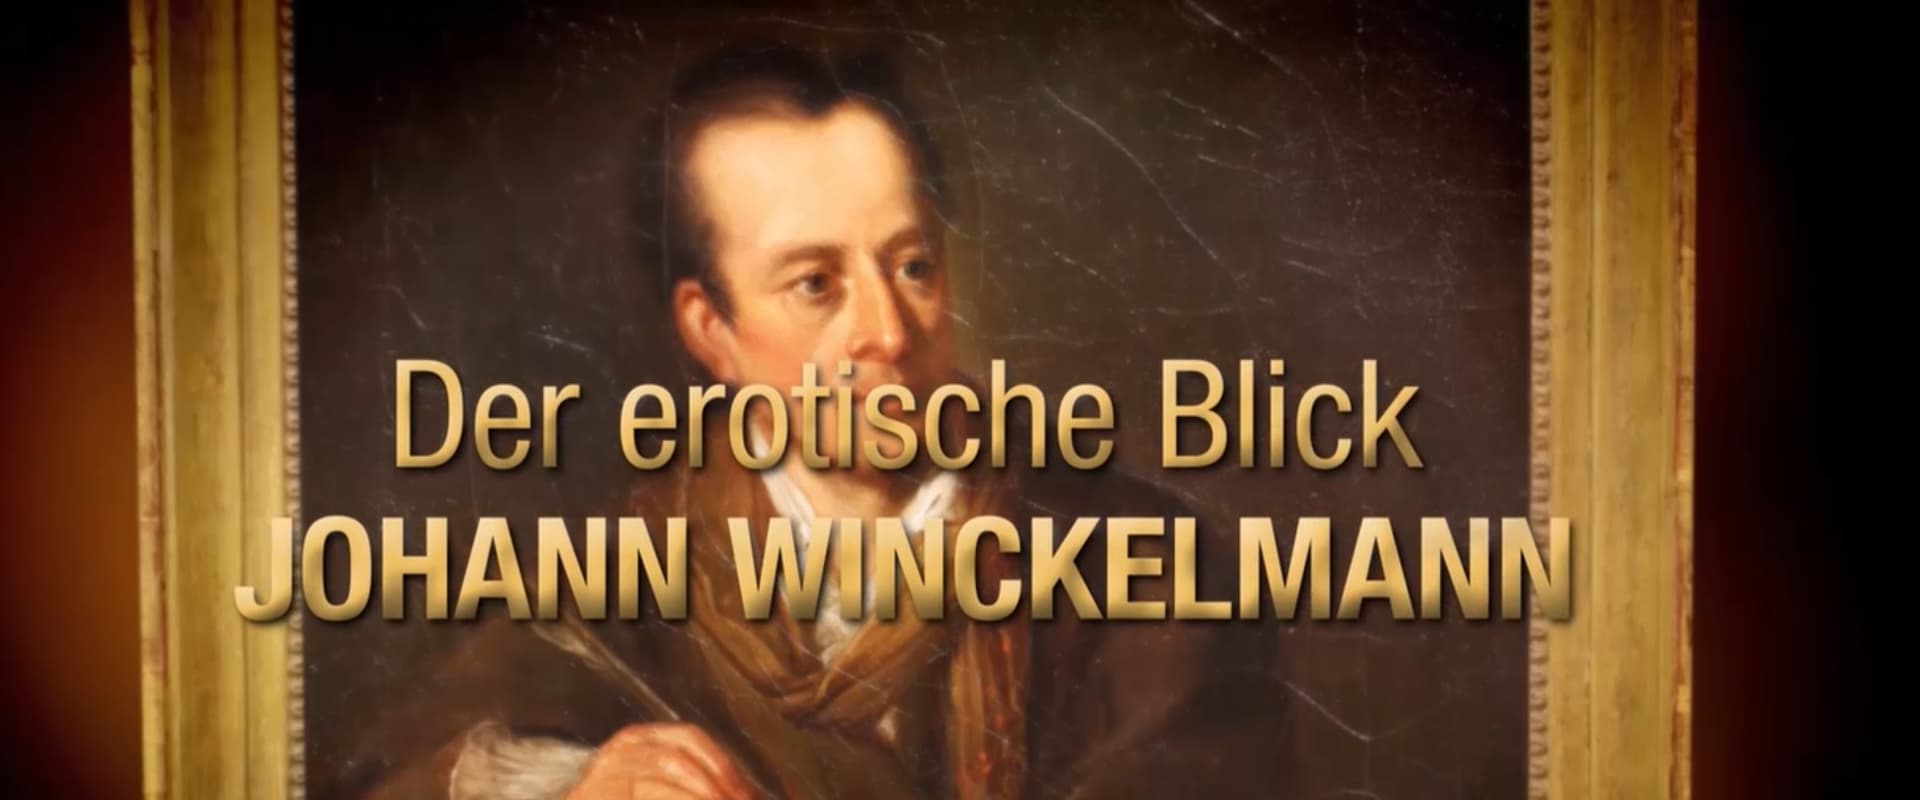 Johann Winckelmann - The Love of Art